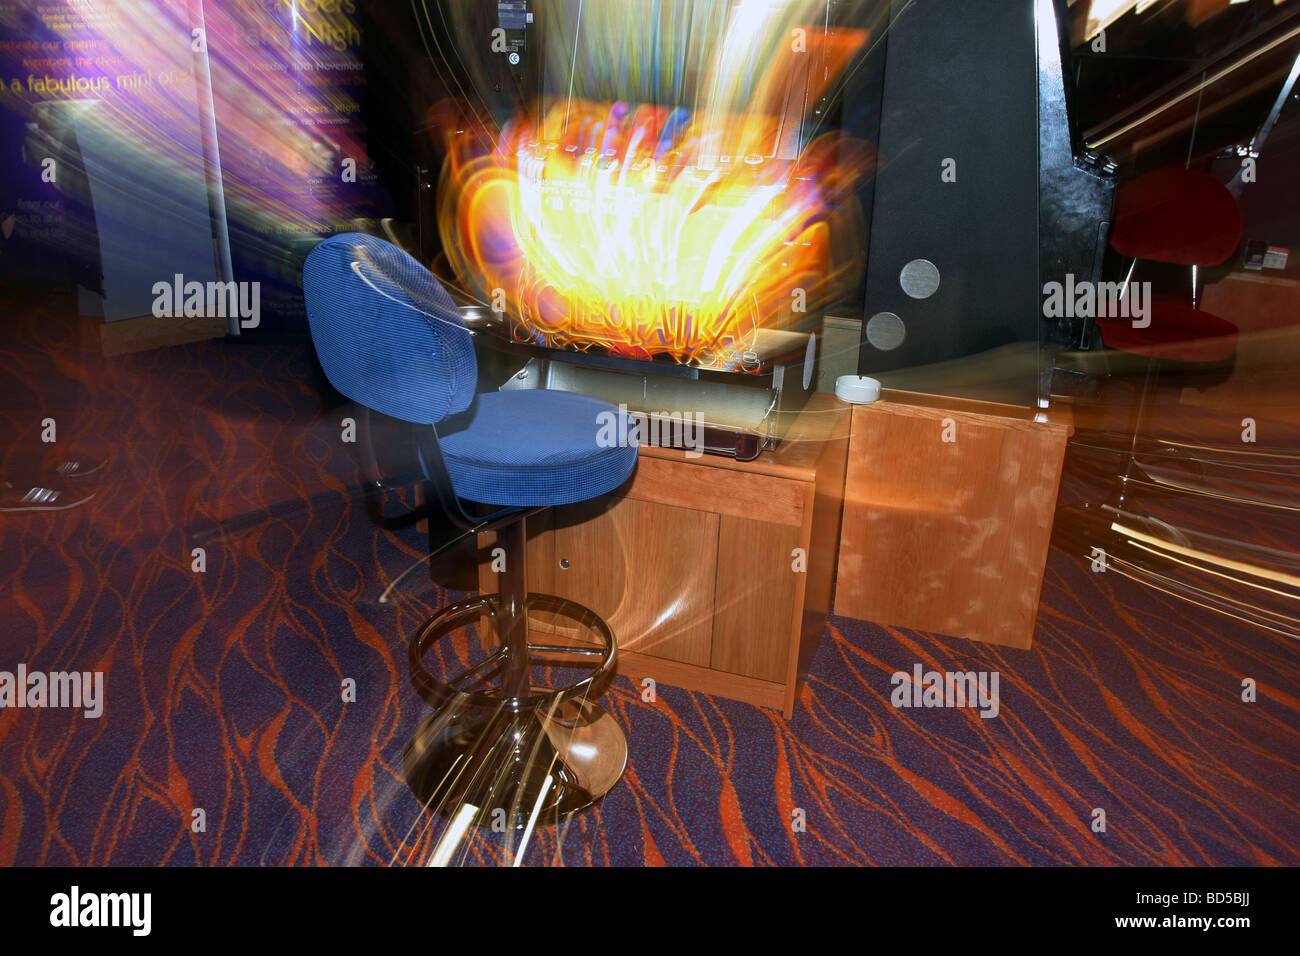 Blitz beleuchtet, langsamen Zoom Belichtung Bild einer "Slot" oder "Frucht" Maschine in einem Casino Stockfoto